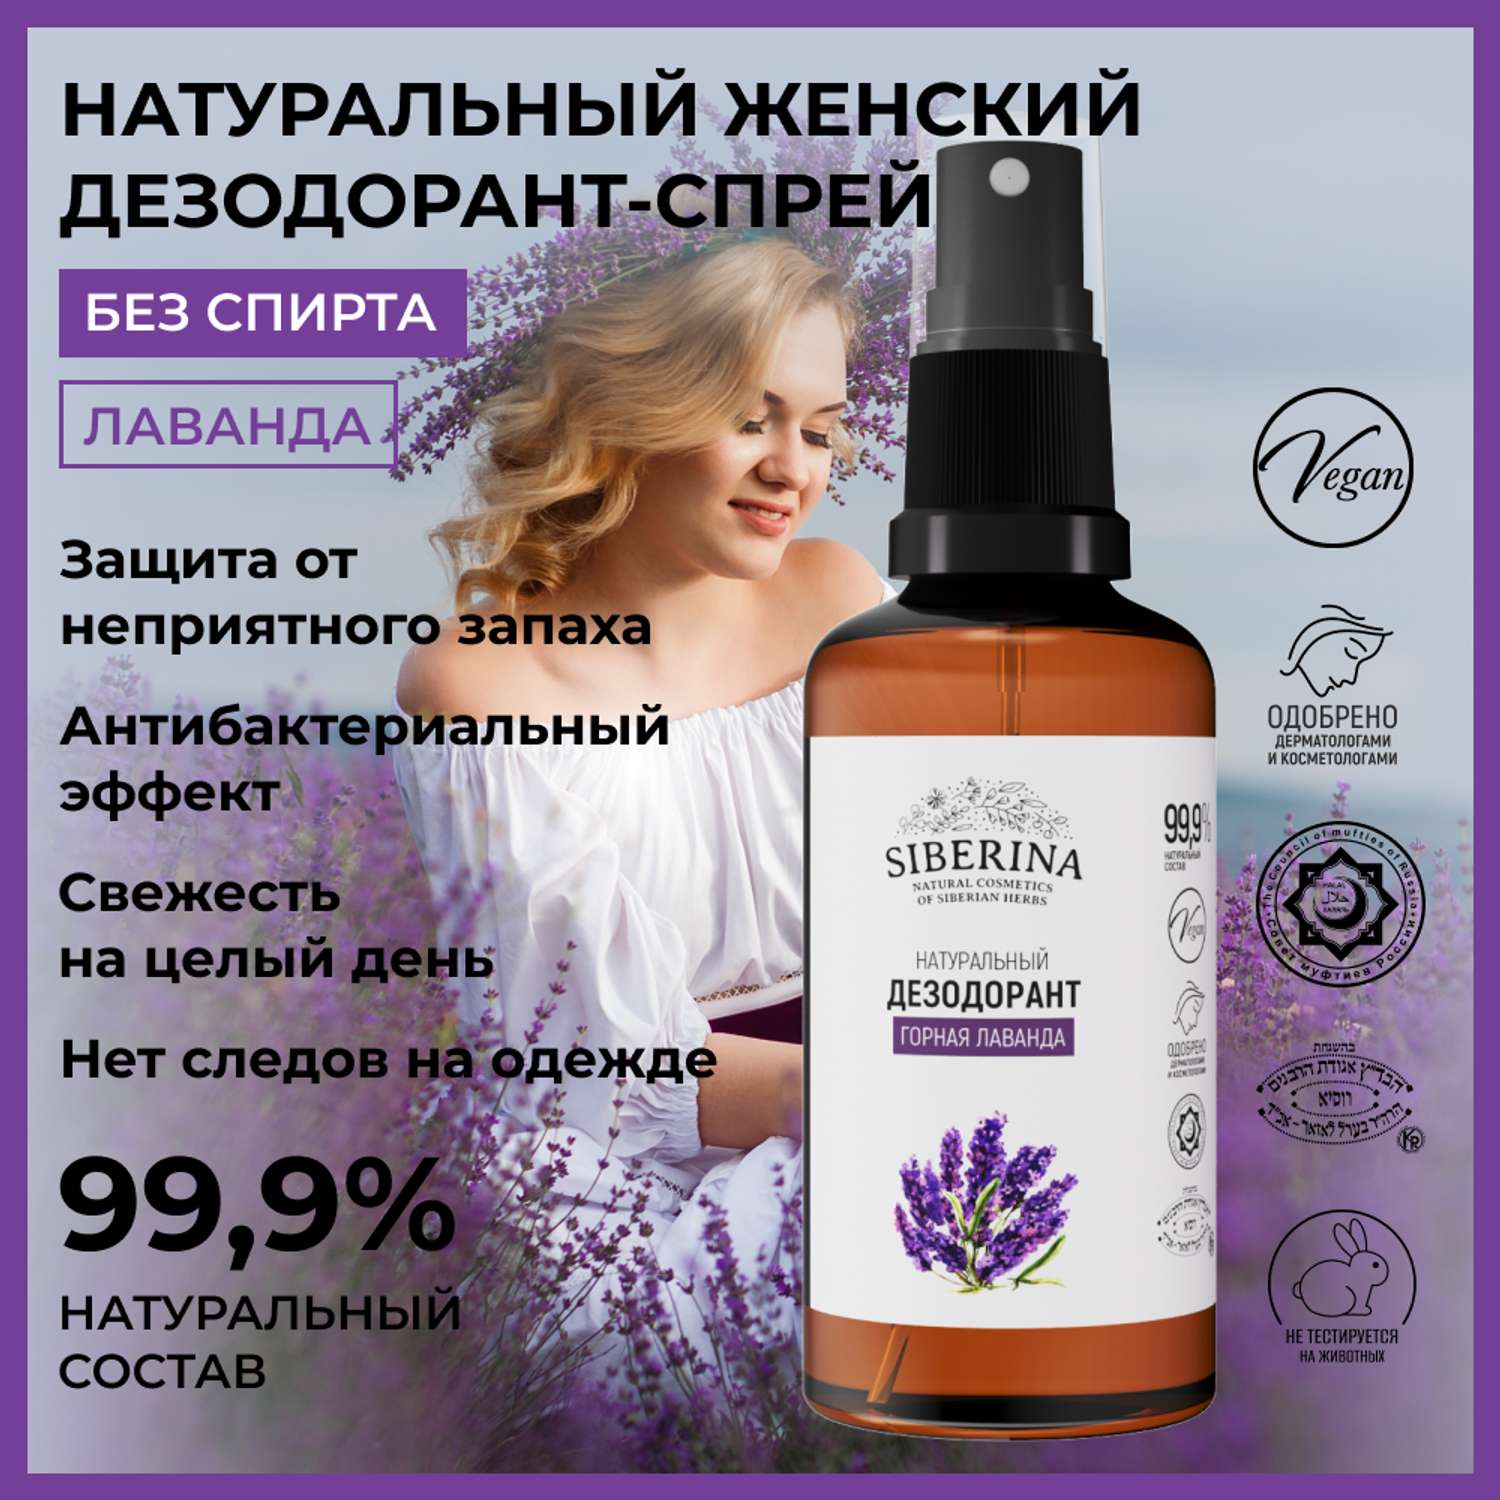 Дезодорант-спрей Siberina натуральный «Горная лаванда» для чувствительной кожи 50 мл - фото 2